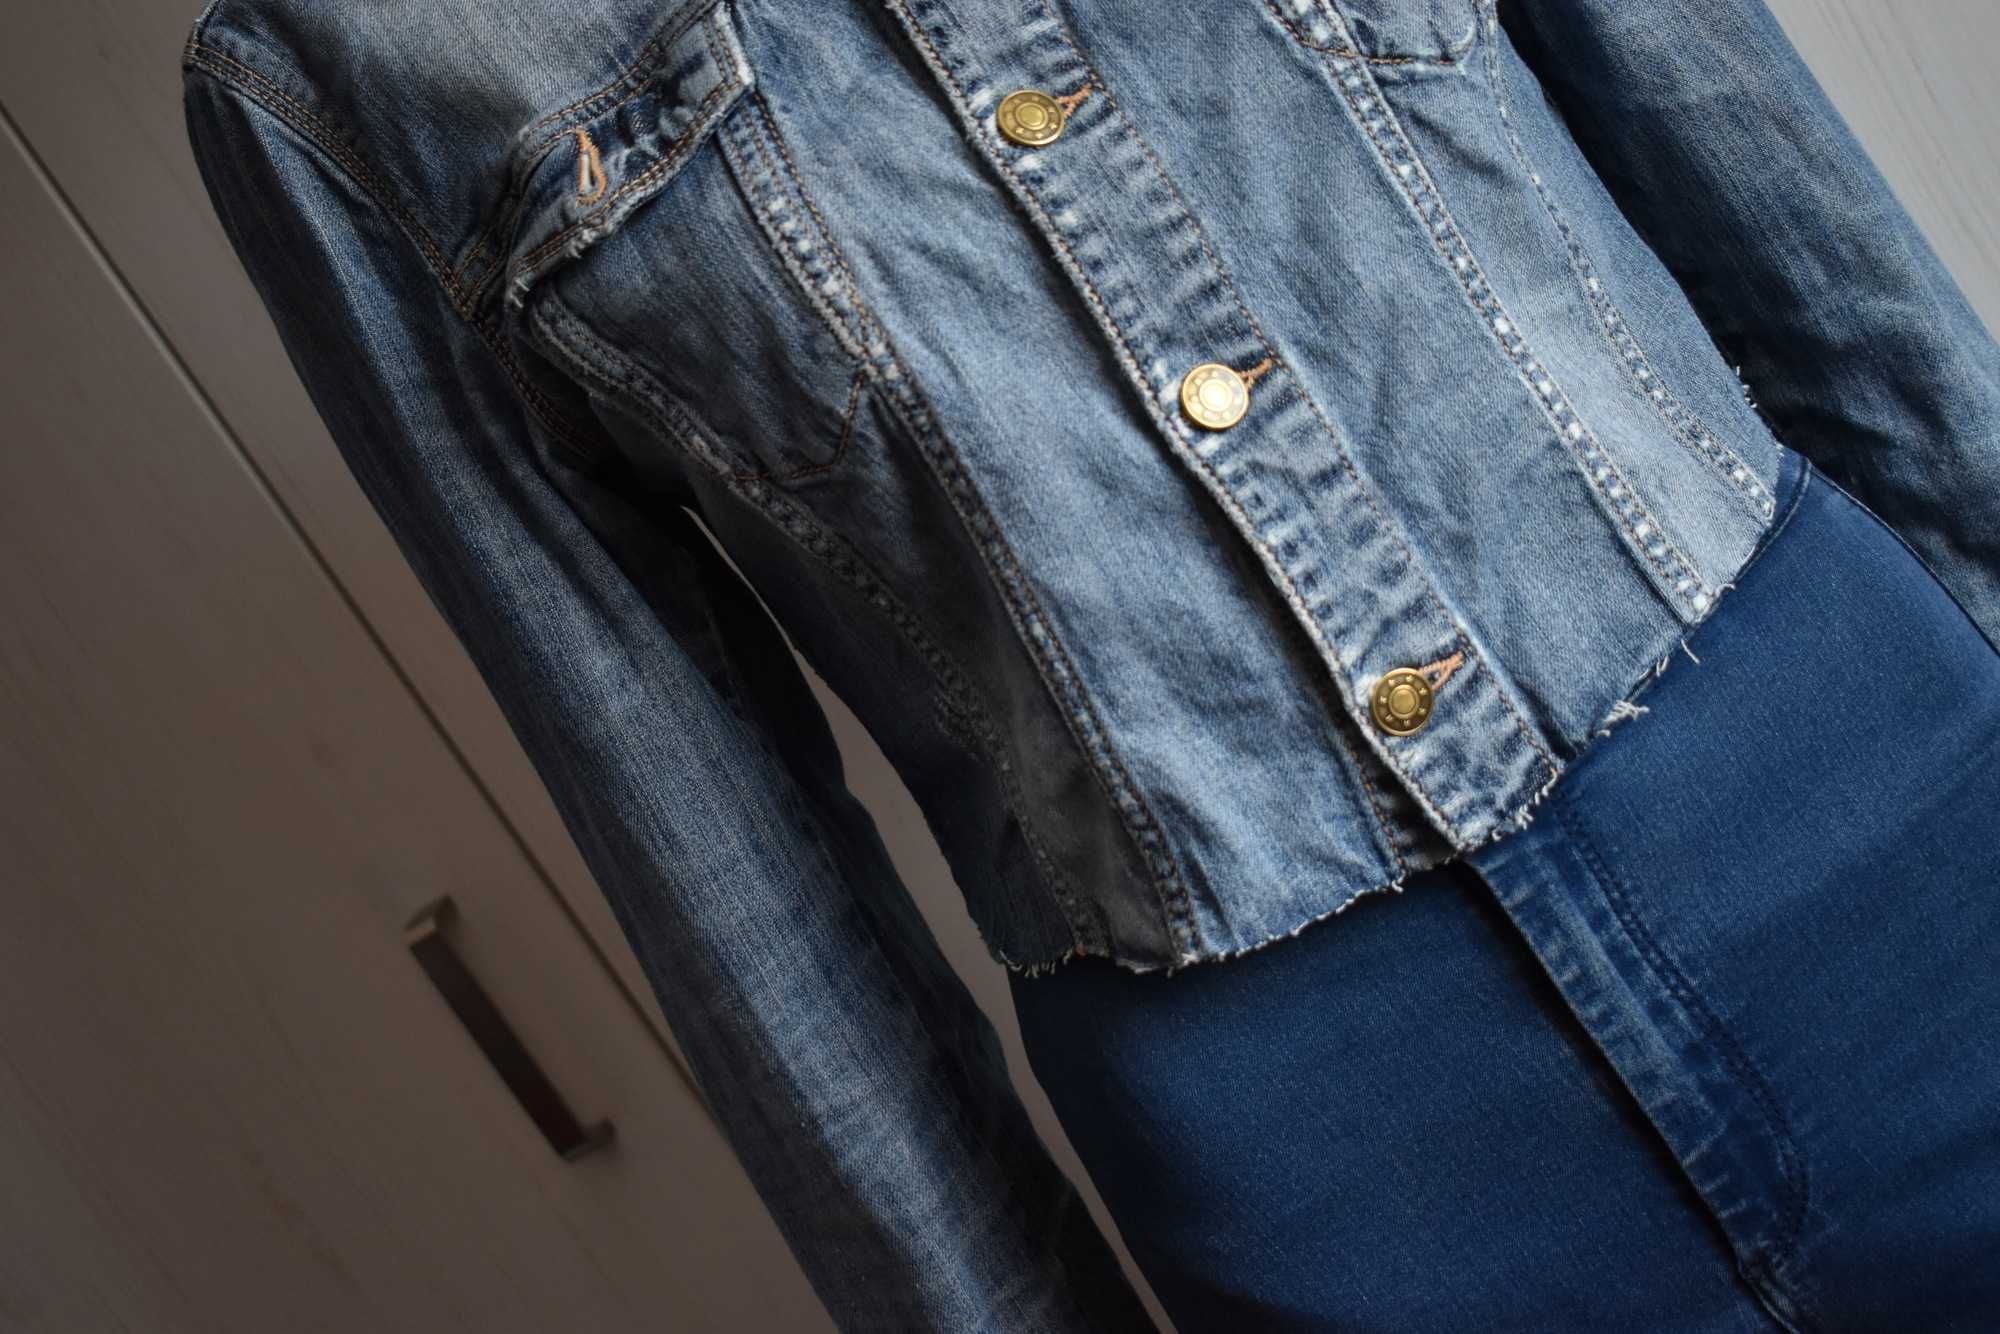 Kurtka dżinsowa 42 XL jeansowa ramoneska katana krótka denim bawełna